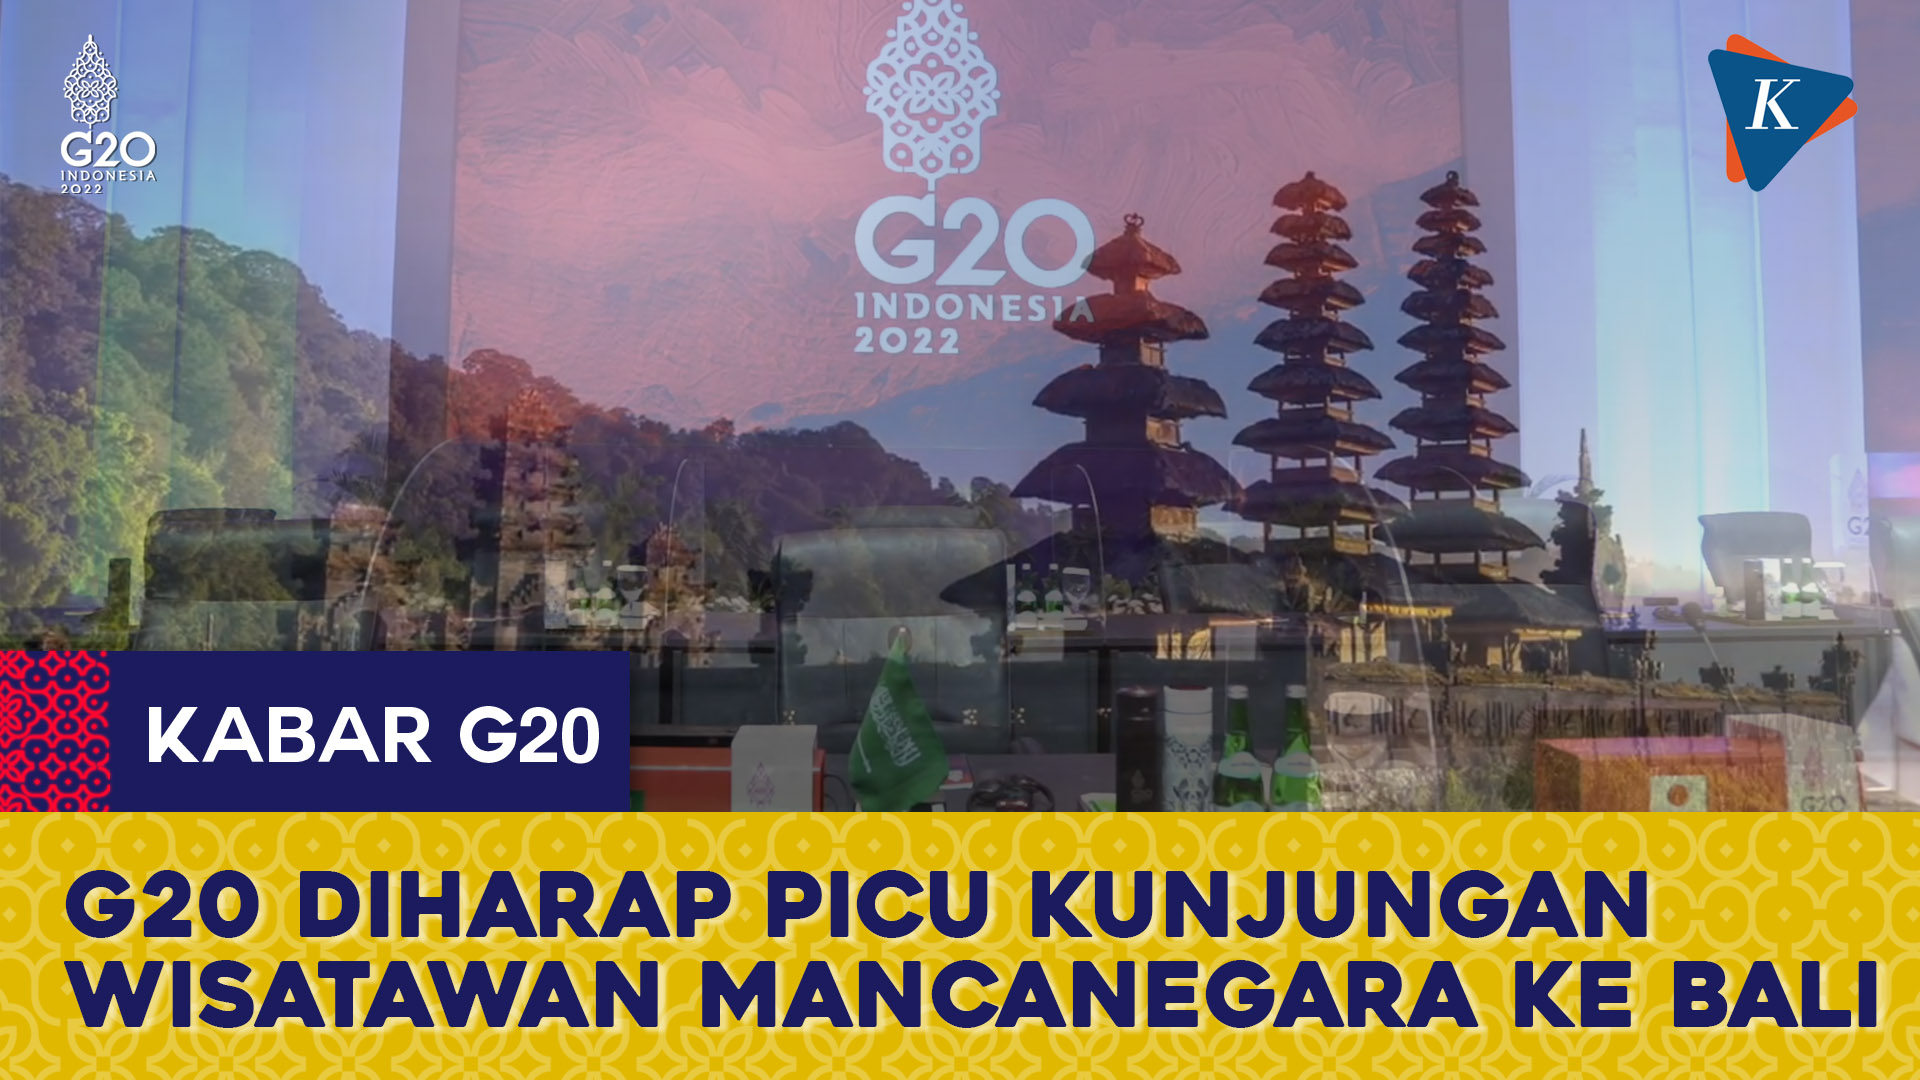 Sandiaga Uno Targetkan 1,5 Juta Wisatawan Mancanegara ke Bali saat G20